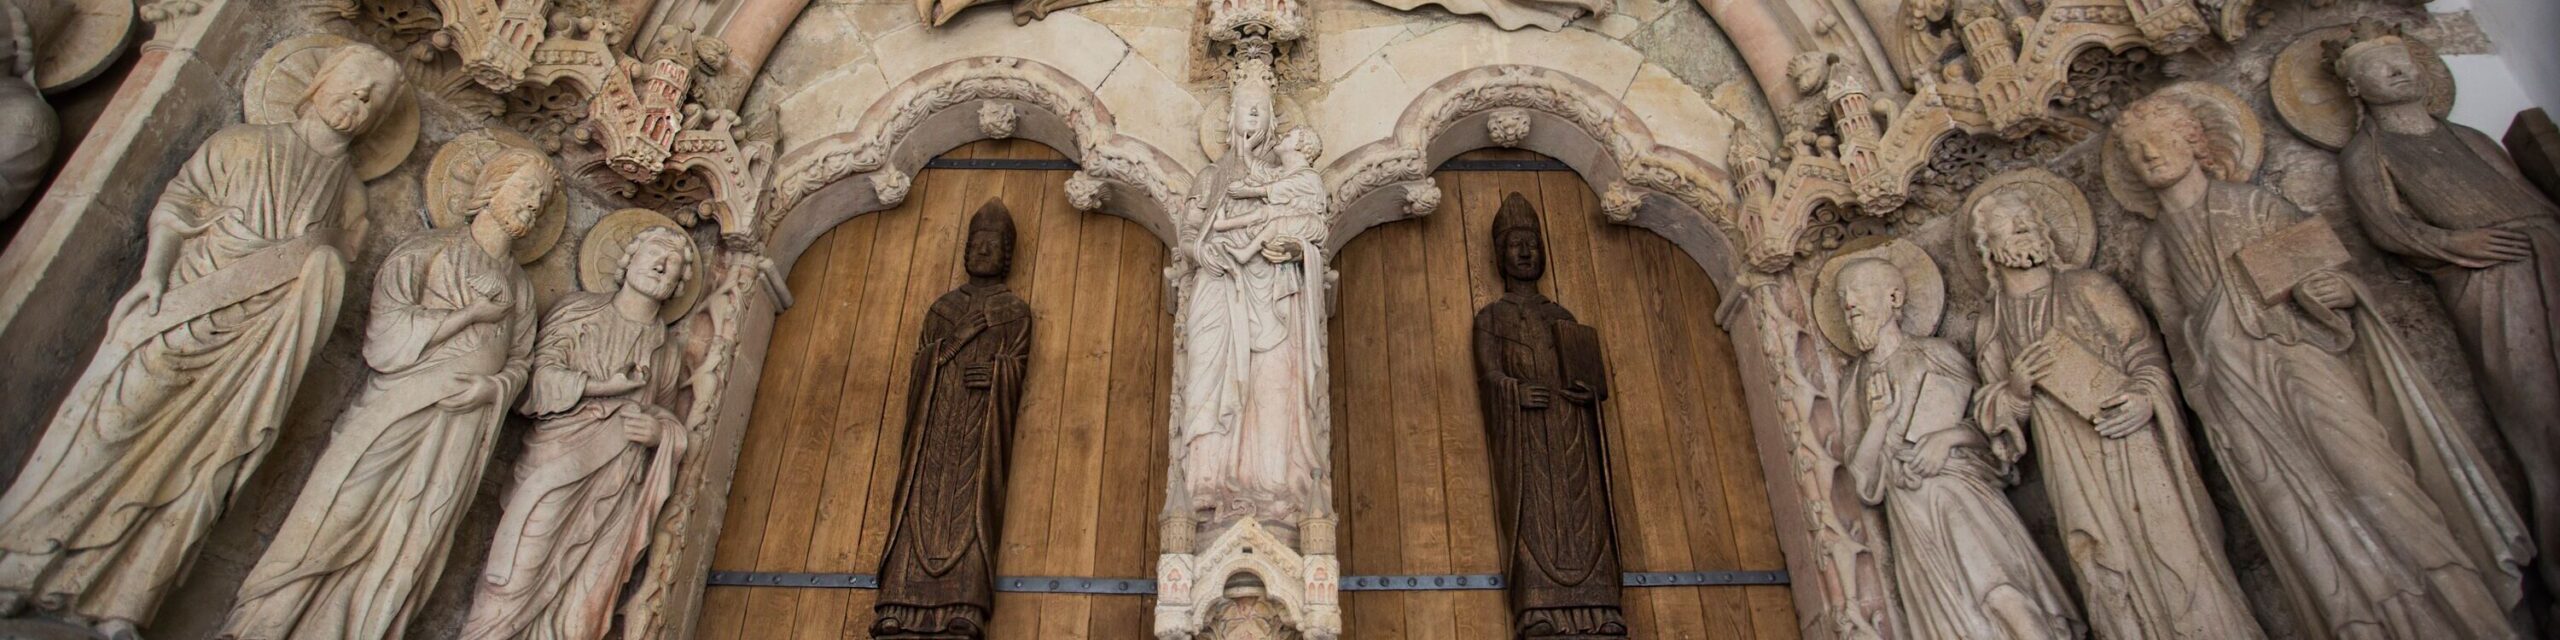 Im Zentrum des Paradiesportals sieht man die drei Patrone des Paderborner Domes: Die Gottesmutter Maria mit dem Jesuskind auf dem Arm, rechts von ihr der heilige Liborius mit einem Buch in der Hand, links von ihr der heilige Kilian